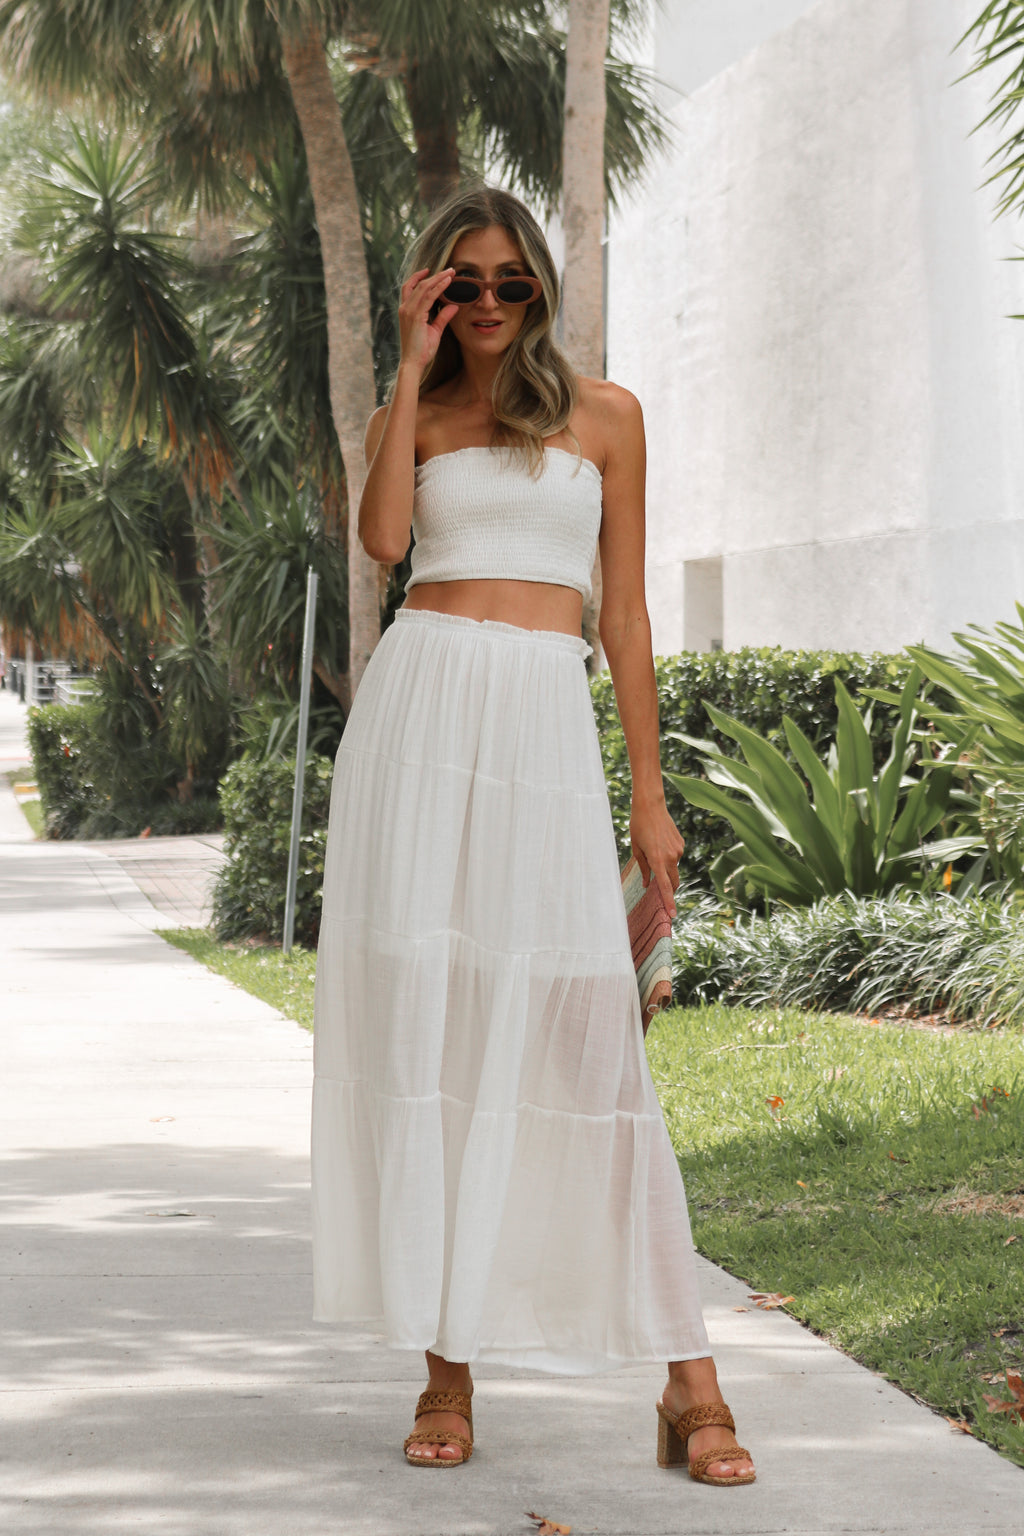 Sunny Daze Skirt in White